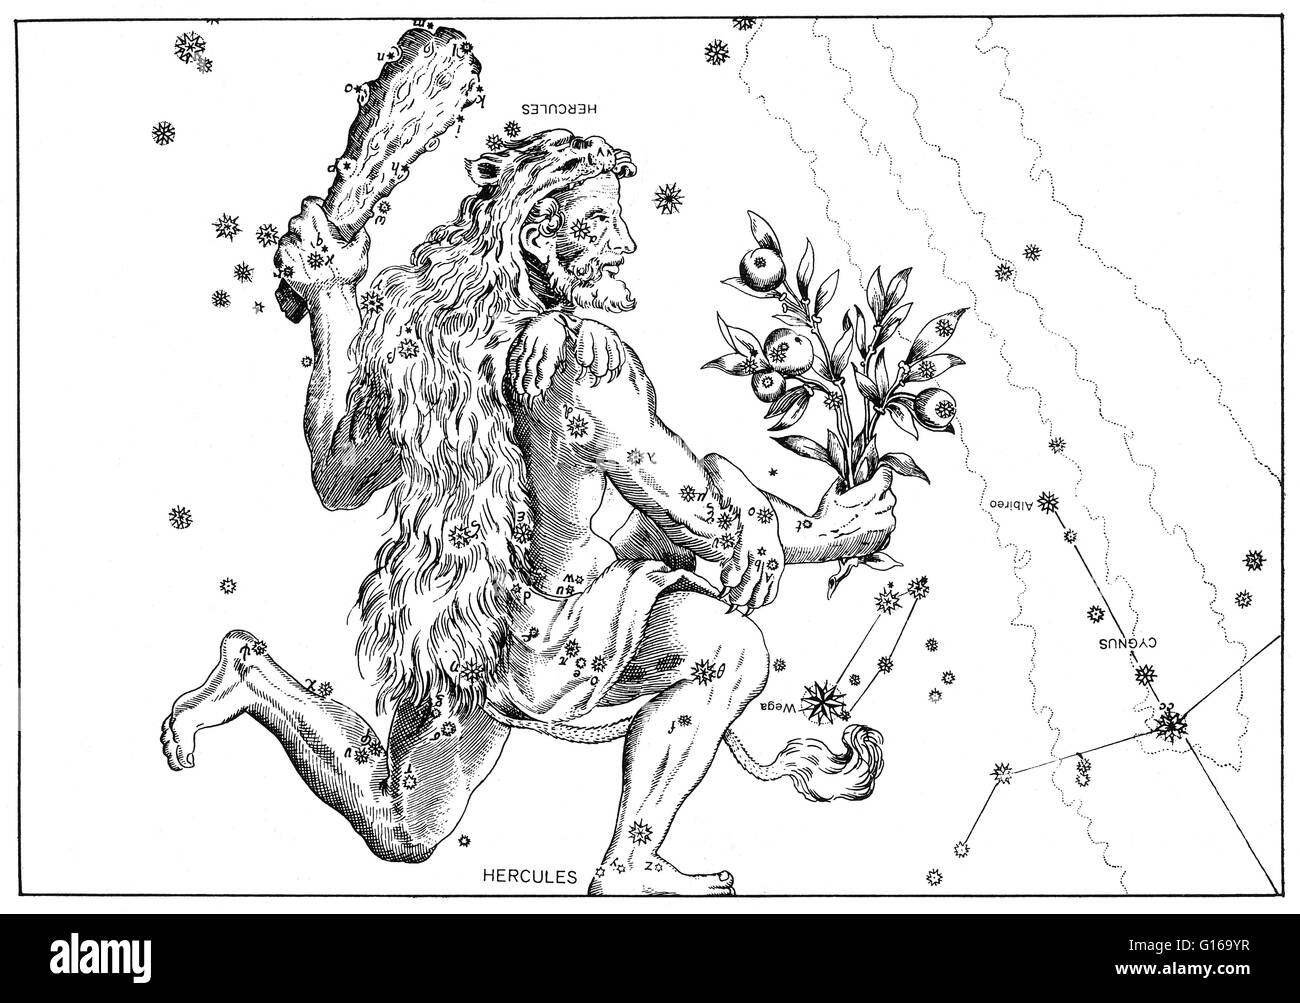 Hercules-Konstellation von Johann Bayers Sternatlas Uranometria Omnium Asterismorum, 1603. Hercules ist ein Sternbild Herkules, den römischen mythologischen Helden angepasst von dem griechischen Helden Herakles benannt. Herkules war eines der 48 Sternbilder-Liste Stockfoto